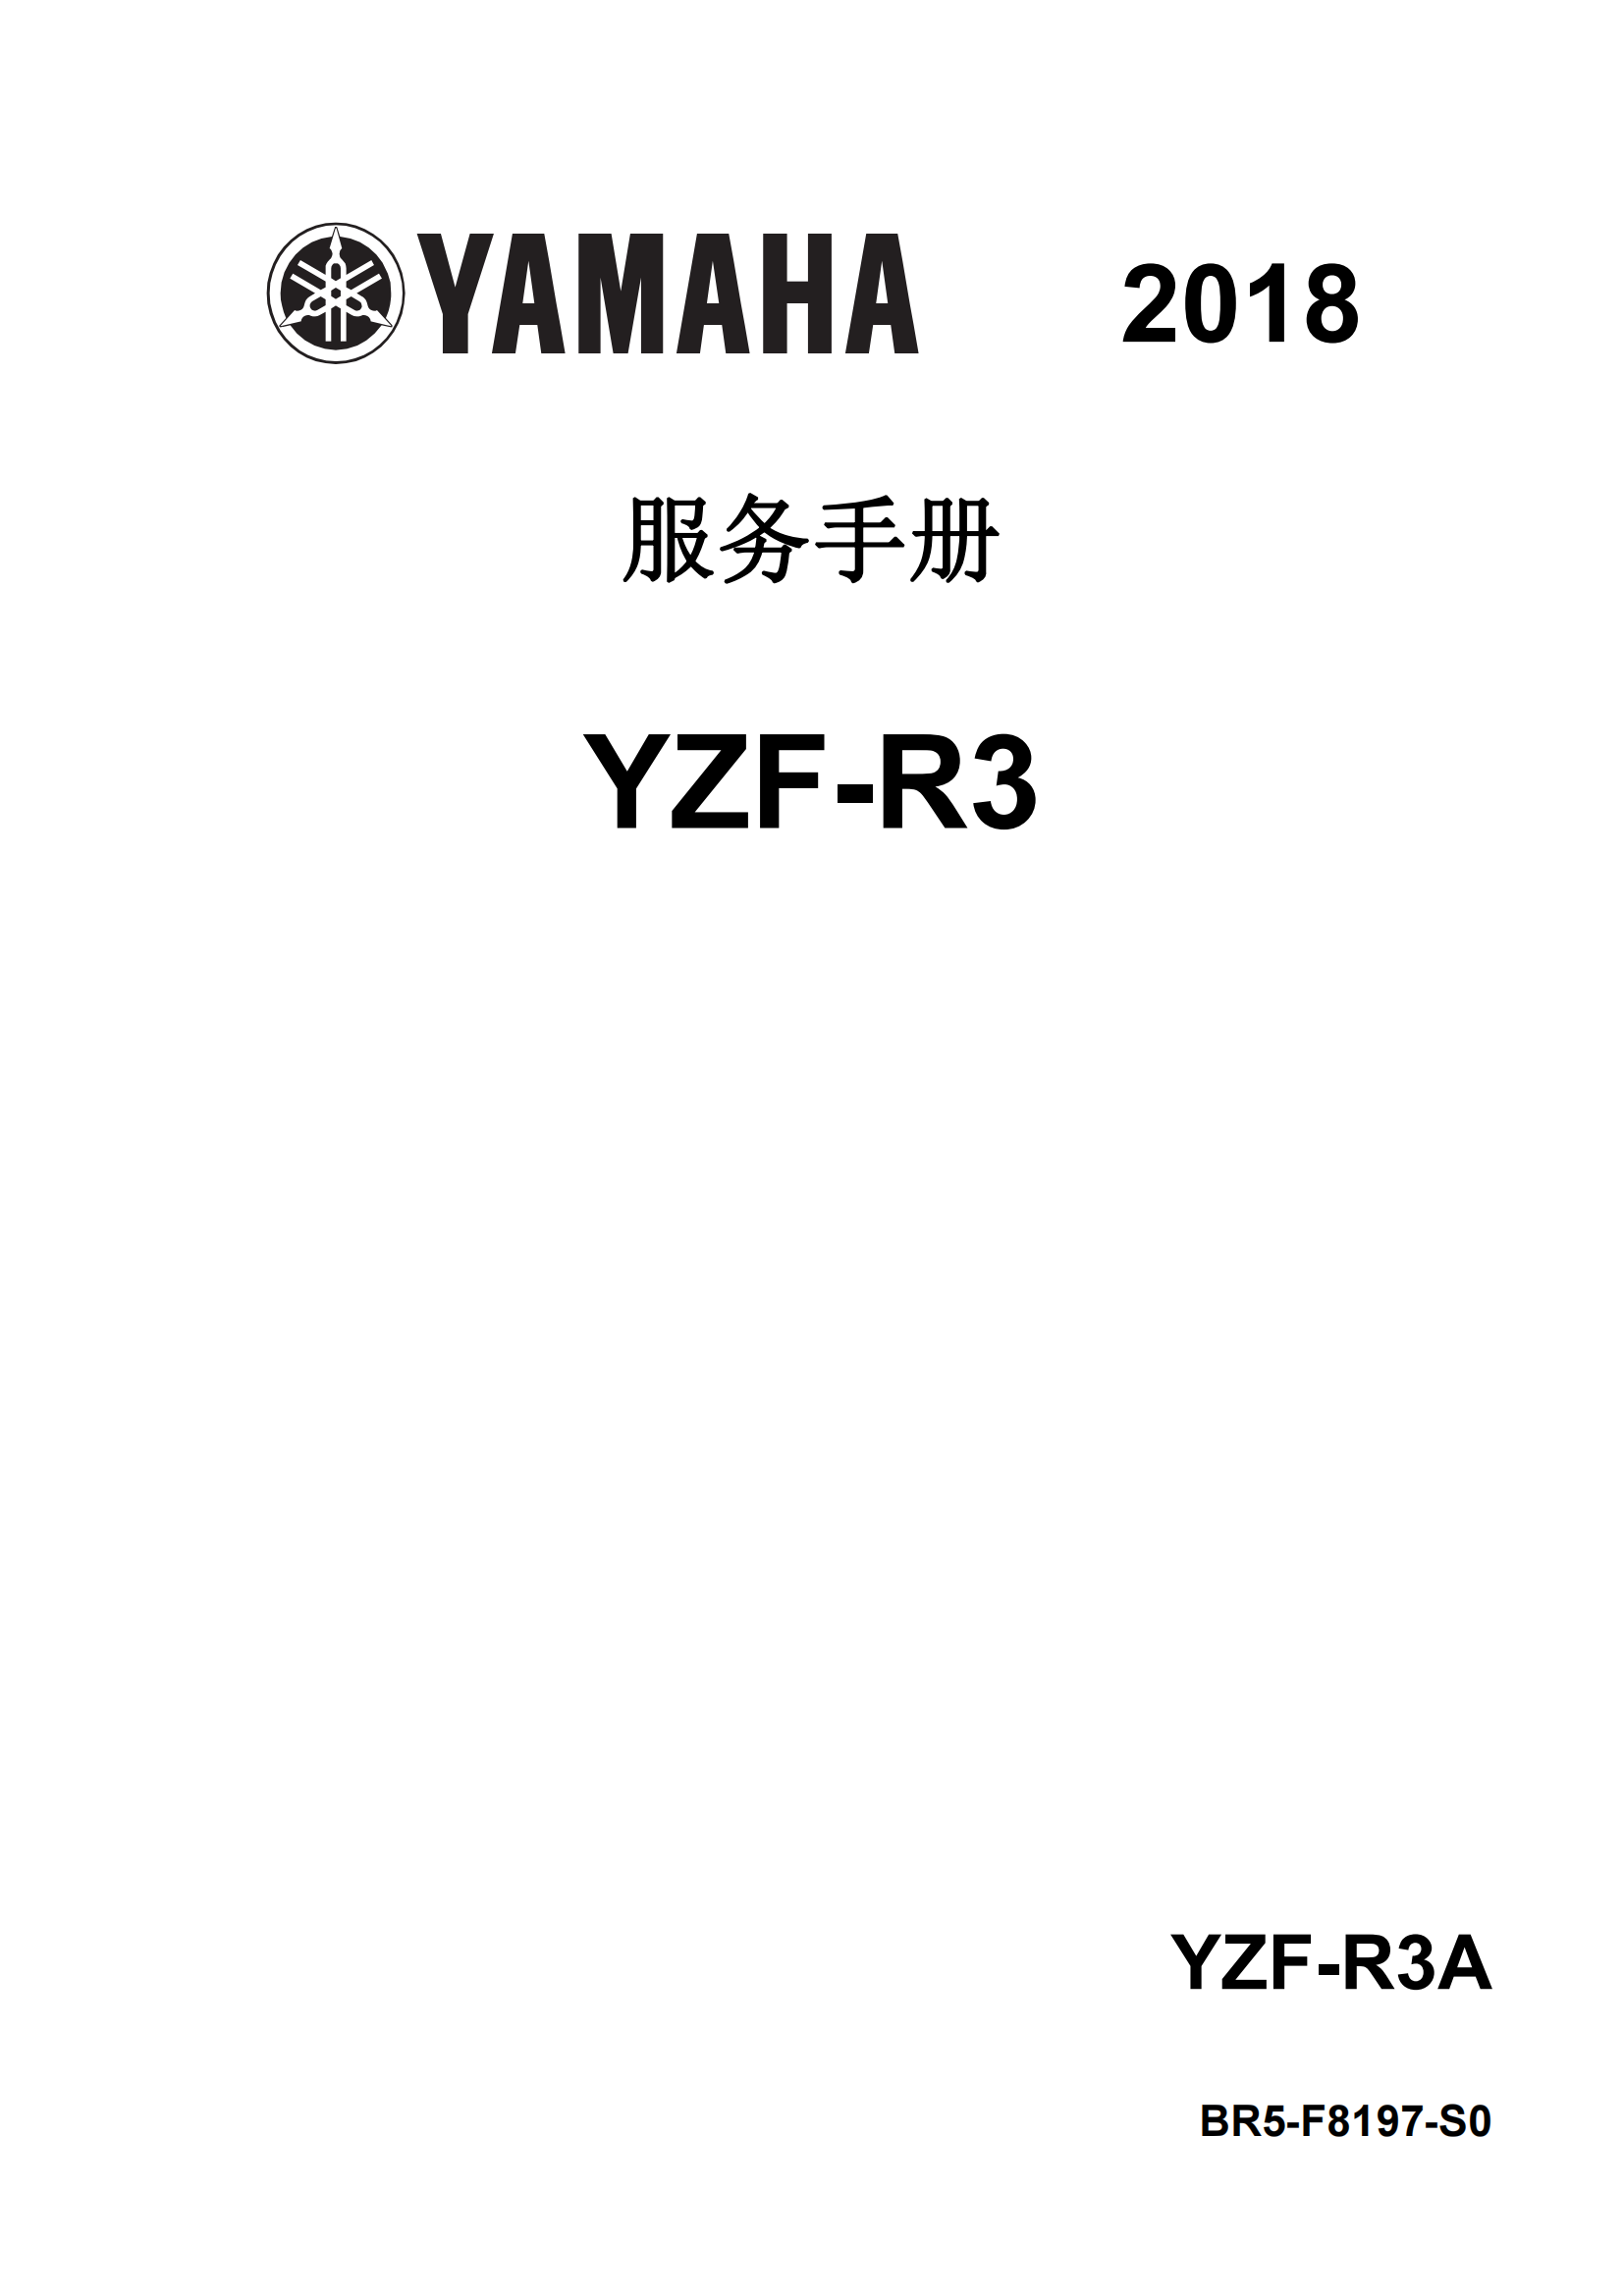 简体中文2018年雅马哈r3维修手册雅马哈yzfr3 yamaha yzf-r3维修手册插图